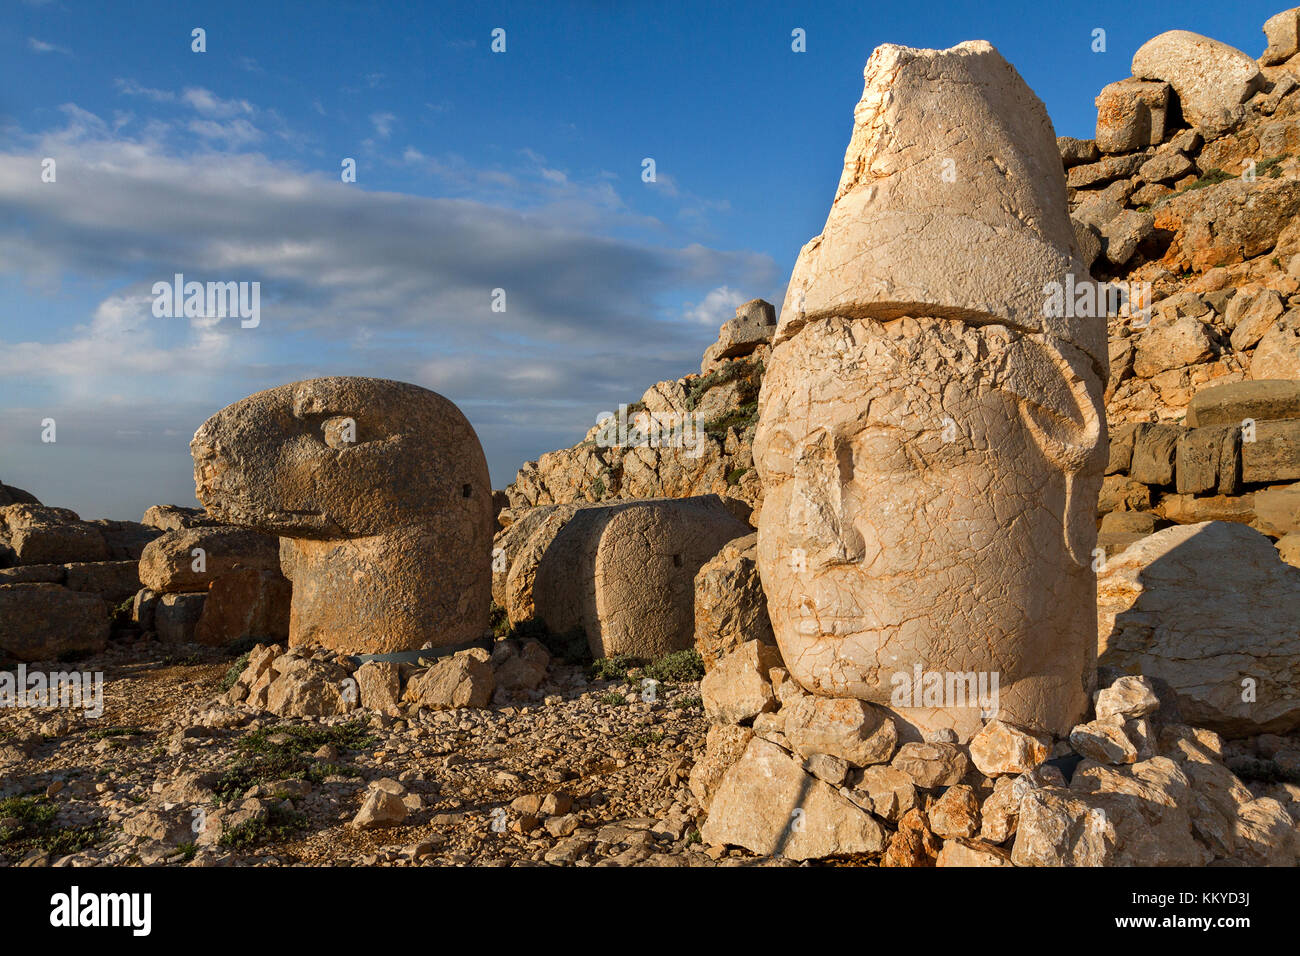 Statue géante chefs construit au 1er siècle avant J.-C. sur le Mont Nemrut, adiyaman, Turquie. Banque D'Images